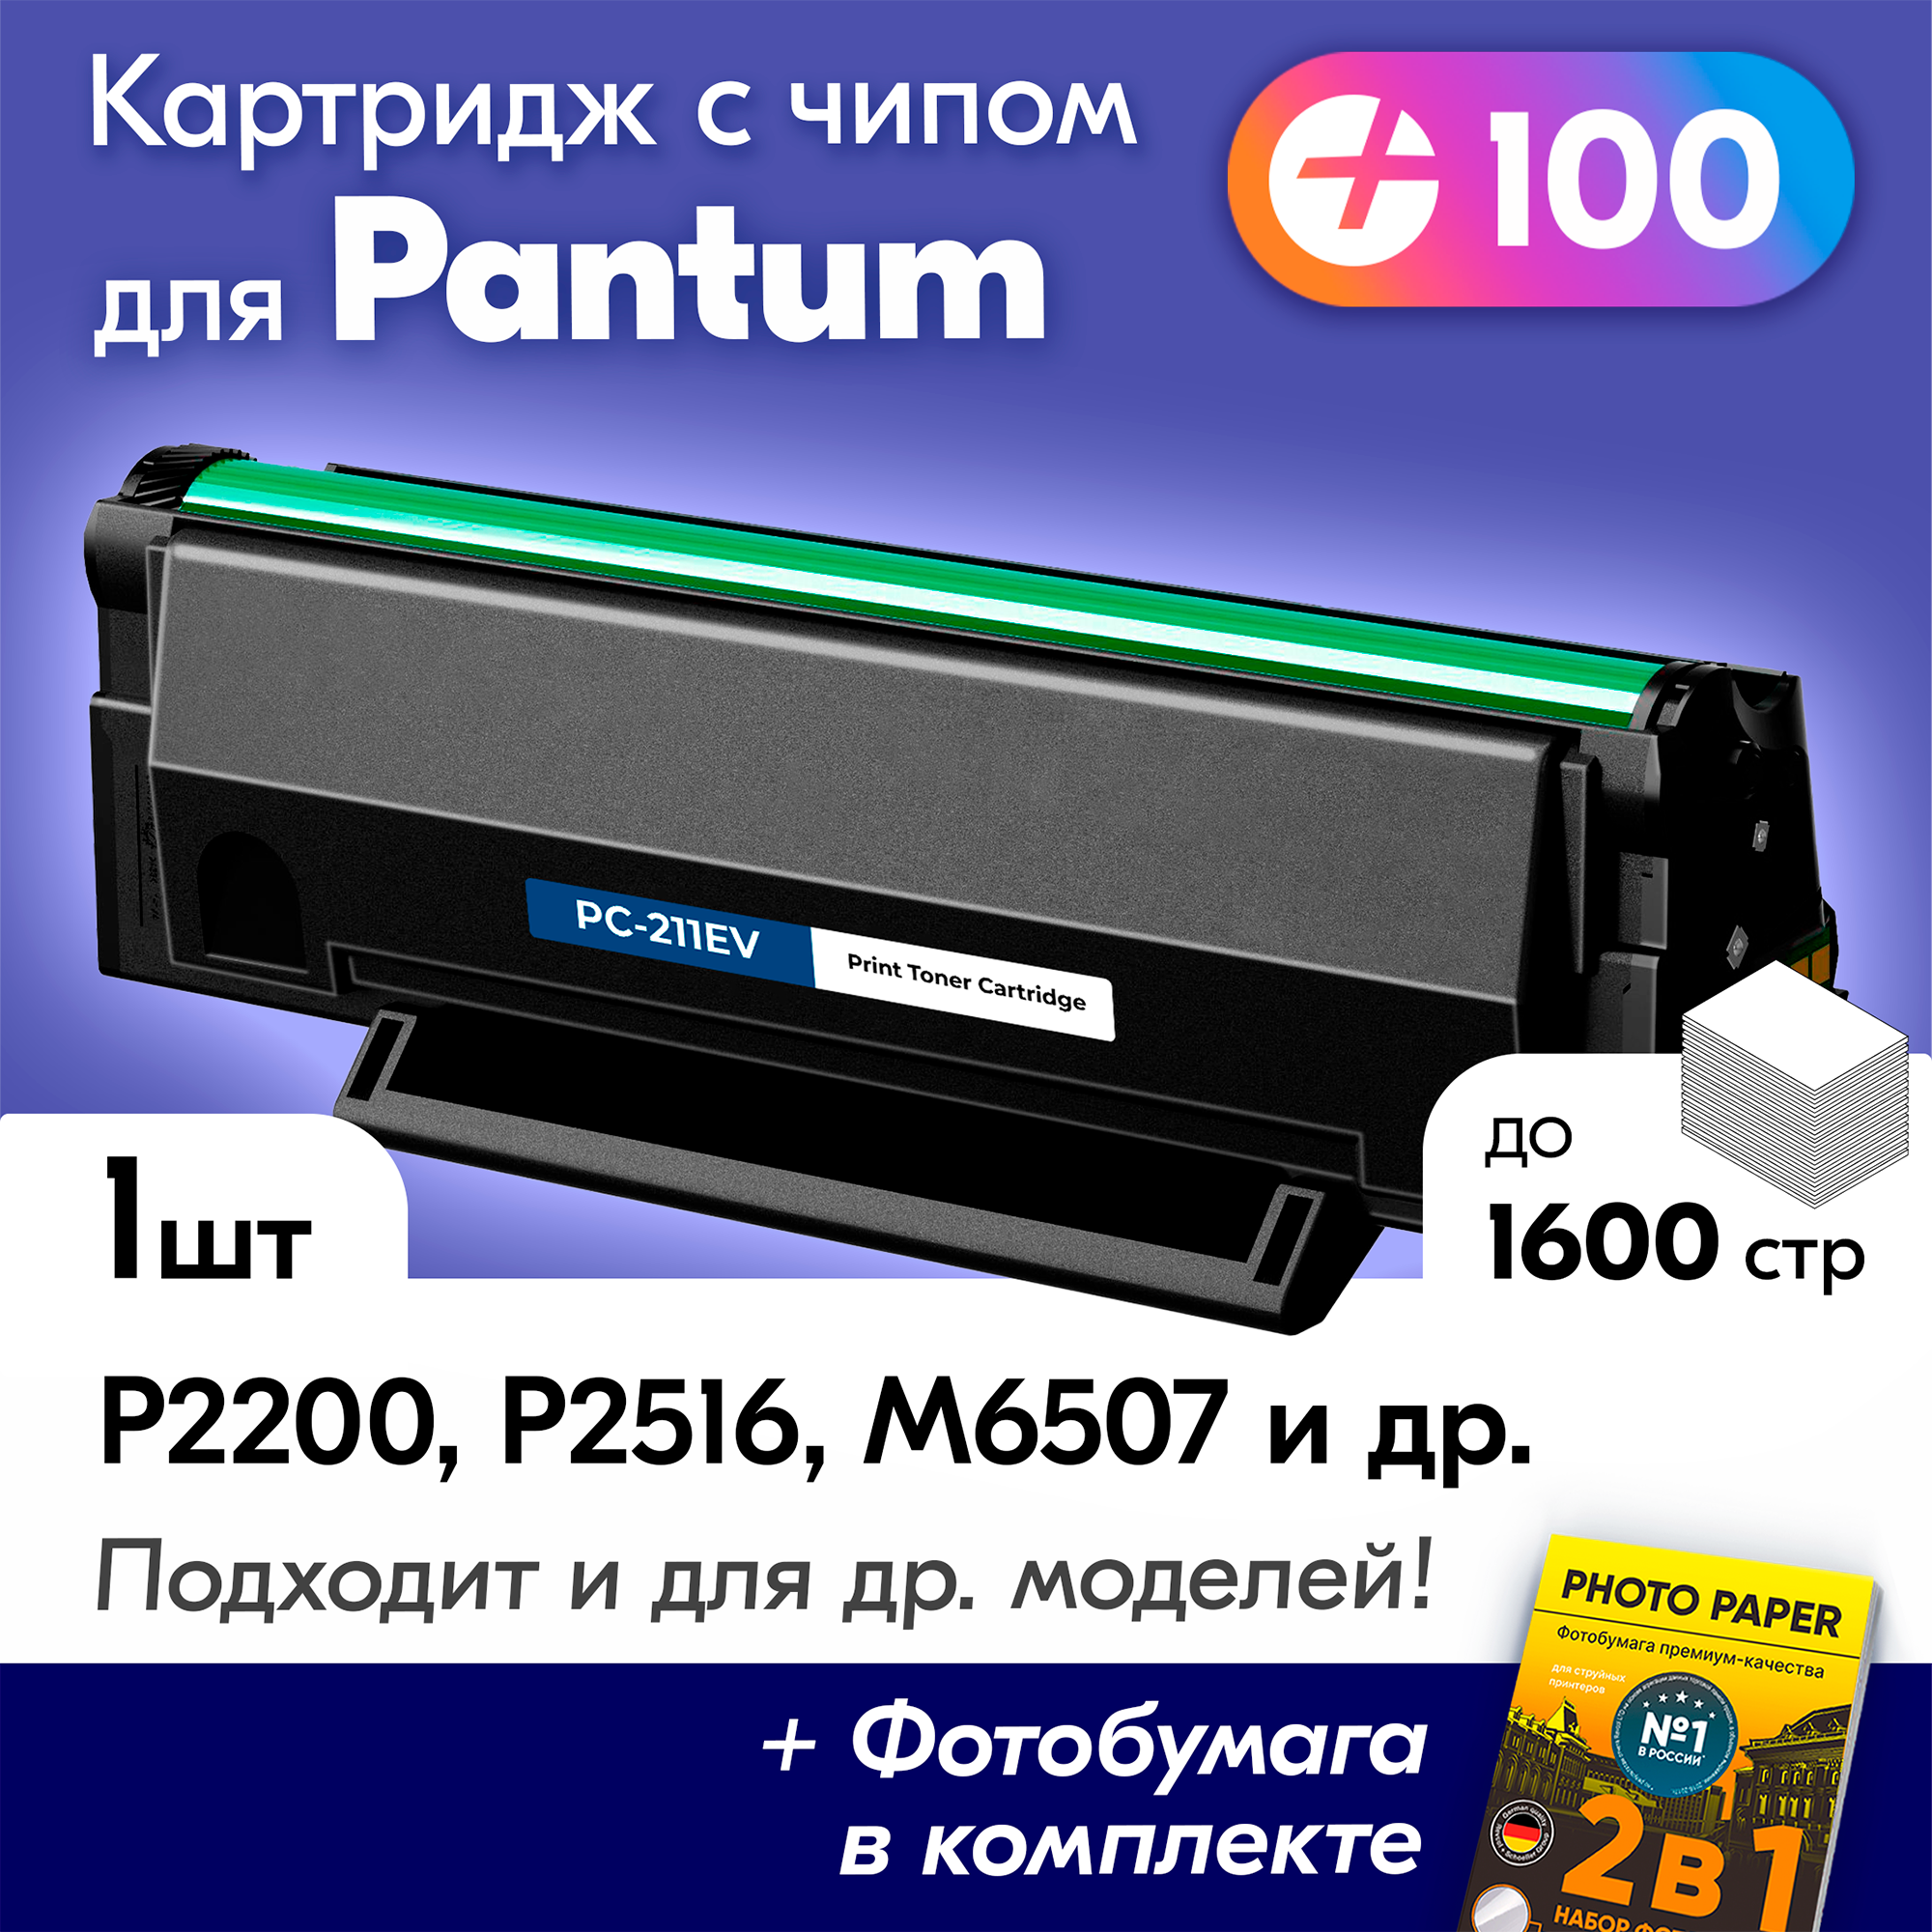 Лазерный картридж для Pantum M2200 Pantum P2200 M6507W M6507 P2500NW P2500 M6607NW с краской (тонером) черный новый заправляемый 1600 копий